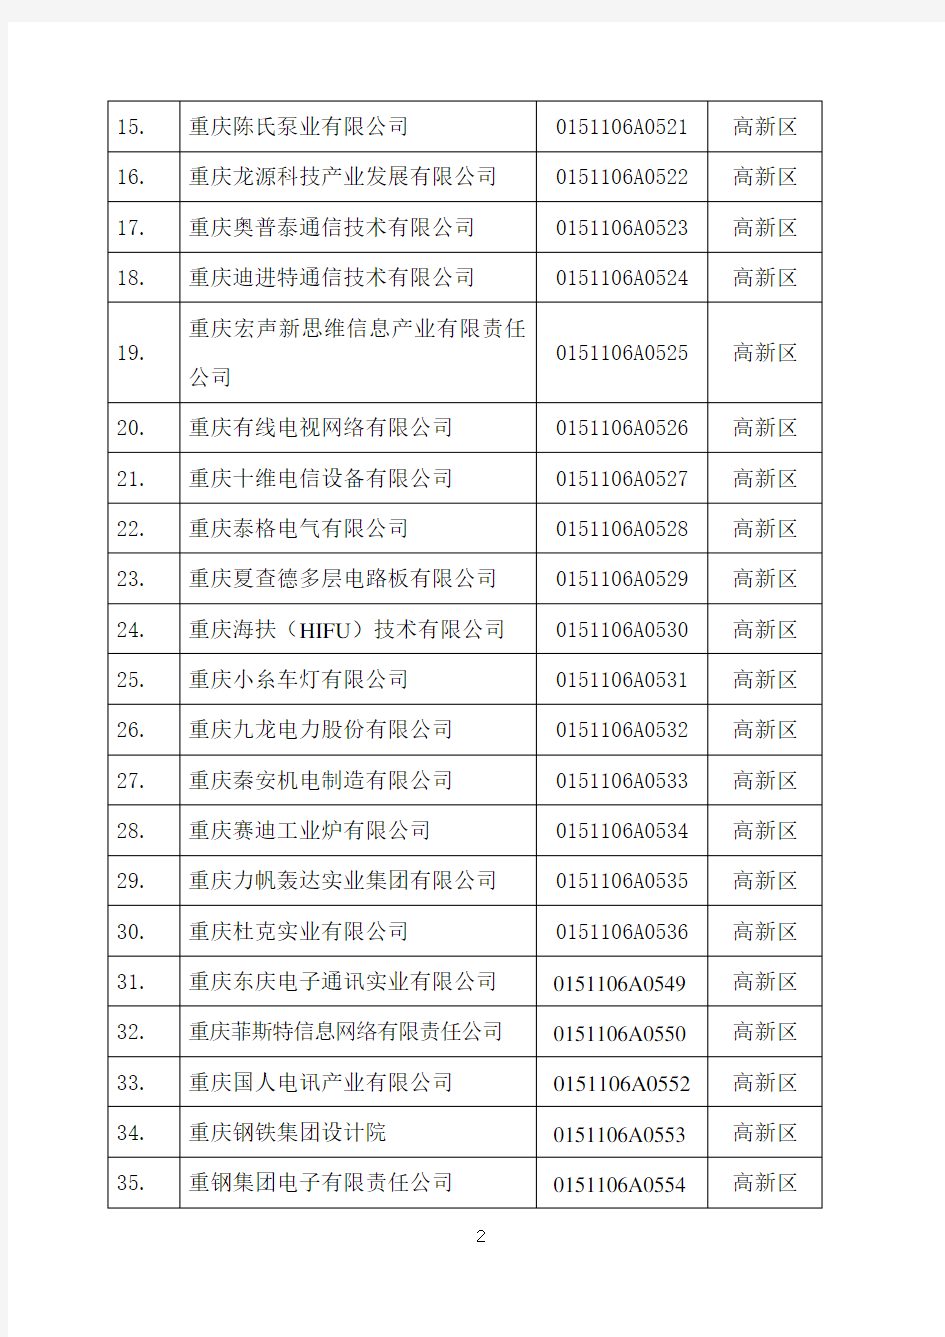 重庆市高新技术企业名单